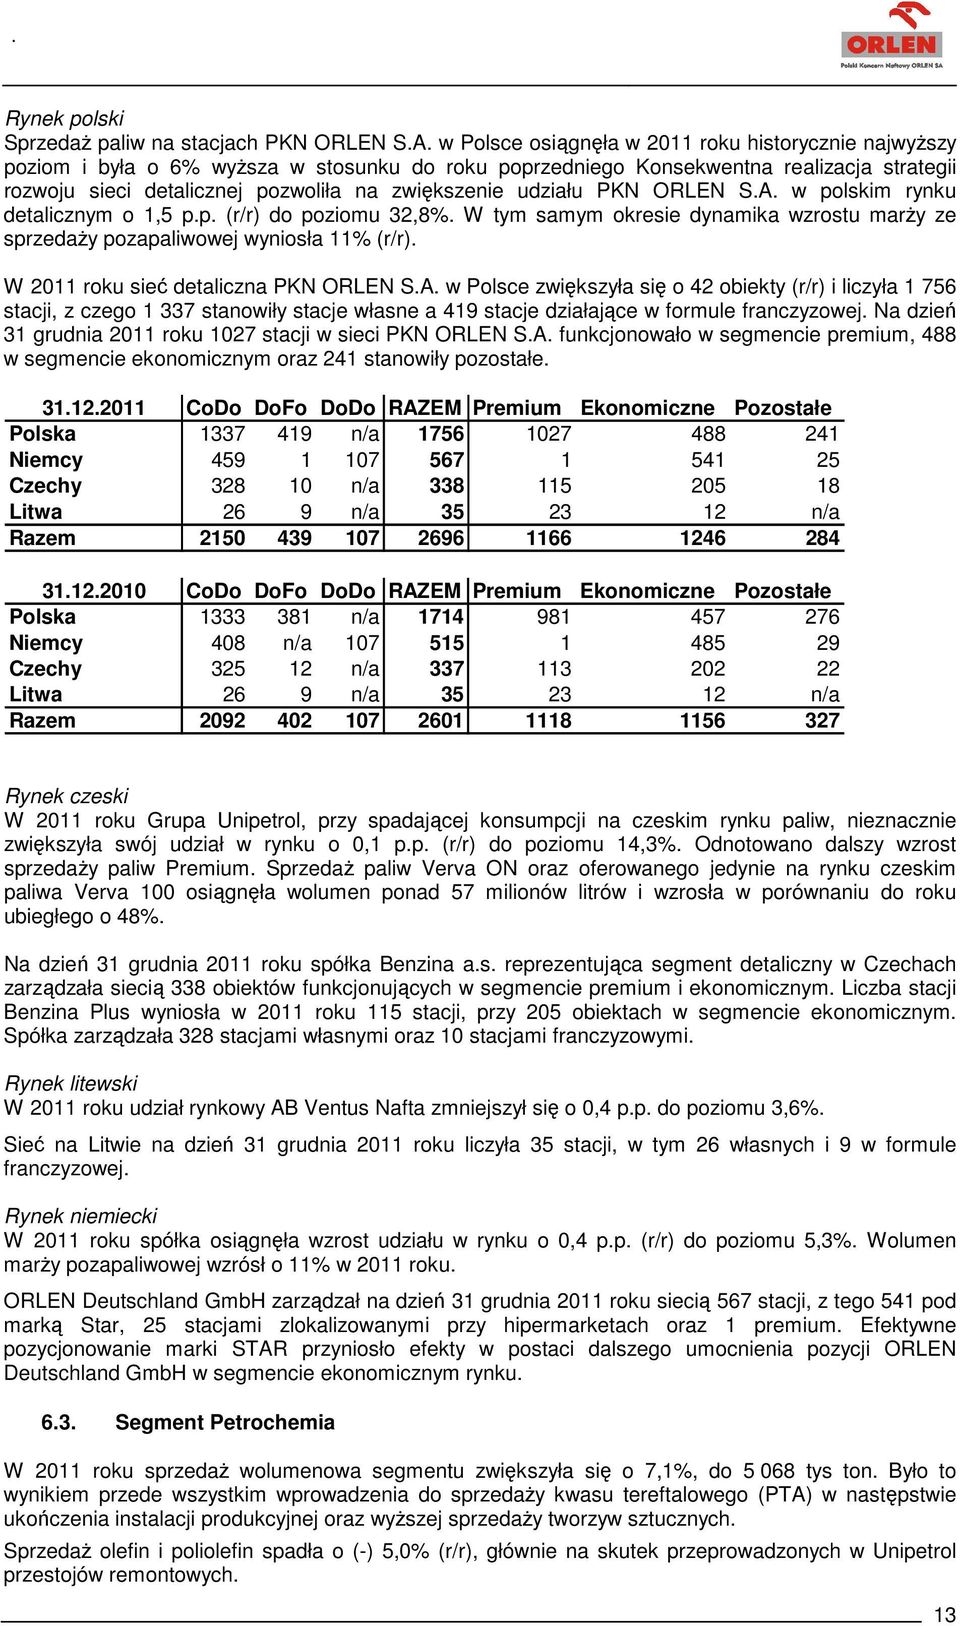 udziału PKN ORLEN S.A. w polskim rynku detalicznym o 1,5 p.p. (r/r) do poziomu 32,8%. W tym samym okresie dynamika wzrostu marży ze sprzedaży pozapaliwowej wyniosła 11% (r/r).